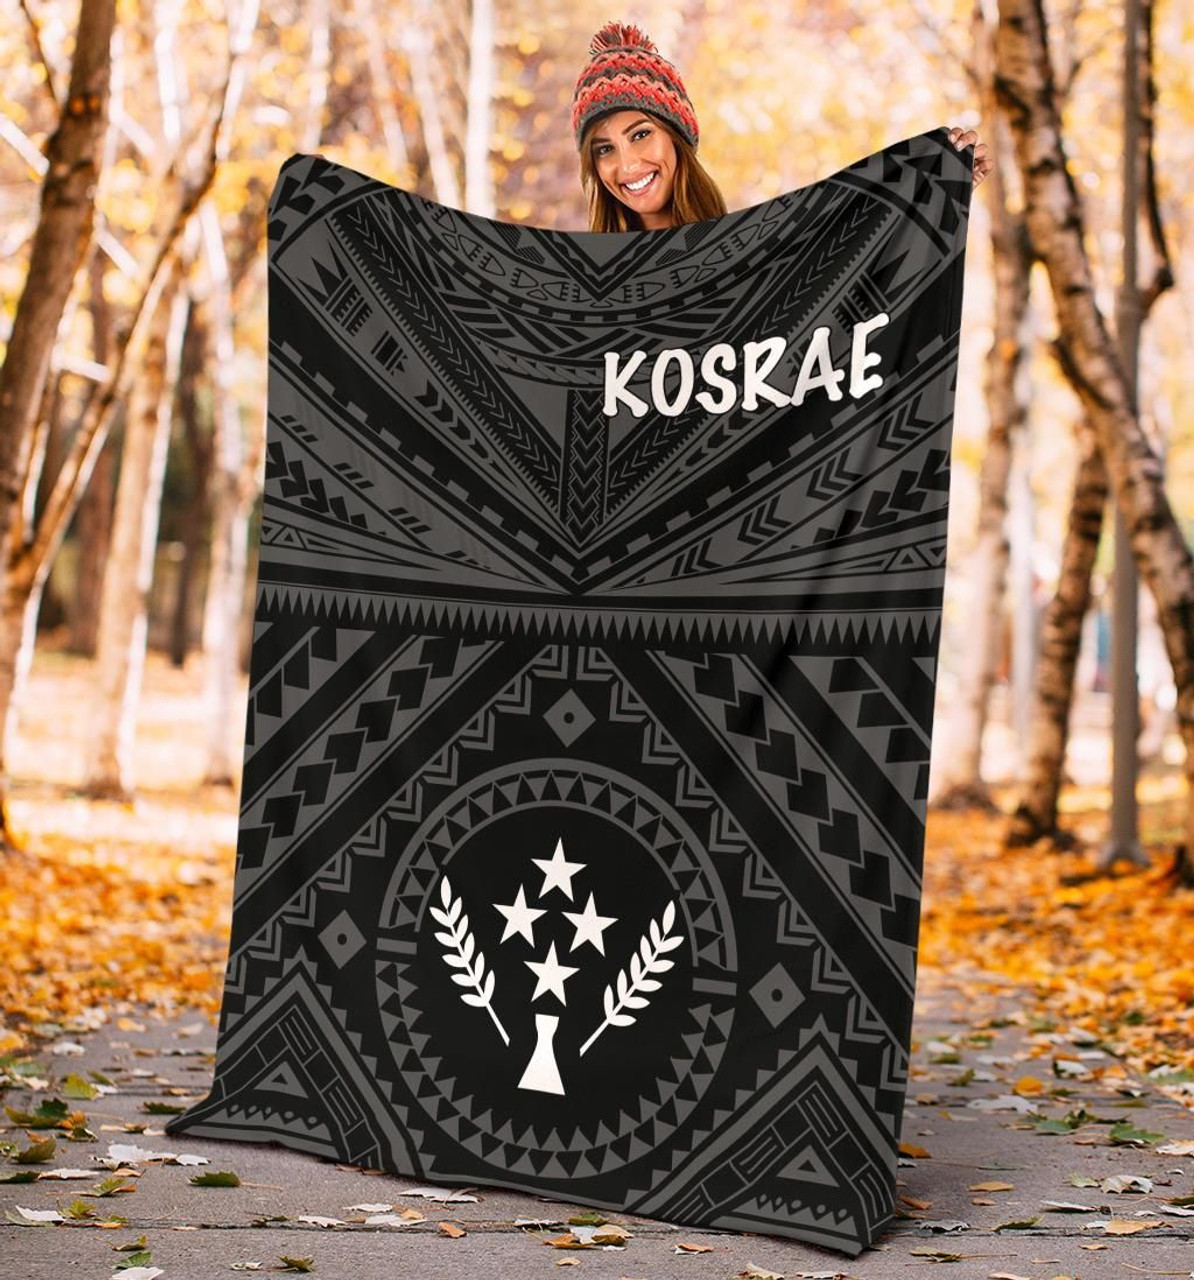 Kosrae Premium Blanket - Kosrae Flag In Polynesian Tattoo Style (Black) 2